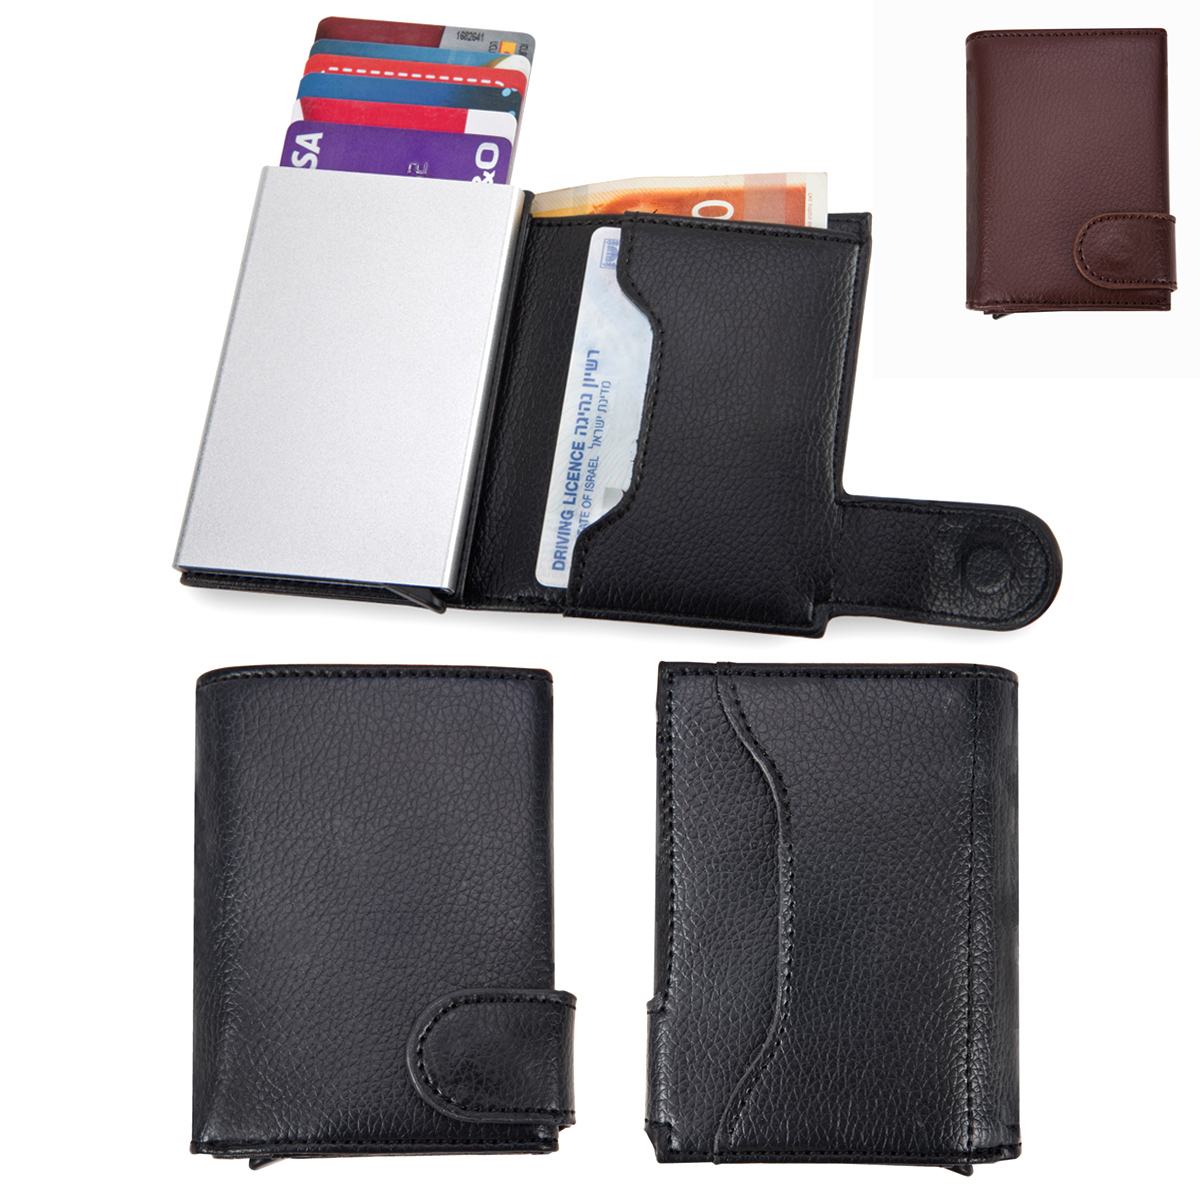 קאש - ארנק לכרטיסי אשראי וכסף עשוי דמוי עור
עם מנגנון NFC לשליפת כרטיסים מדורגת ועם מנגנון אבטחה RFID.
9.5 7x ס